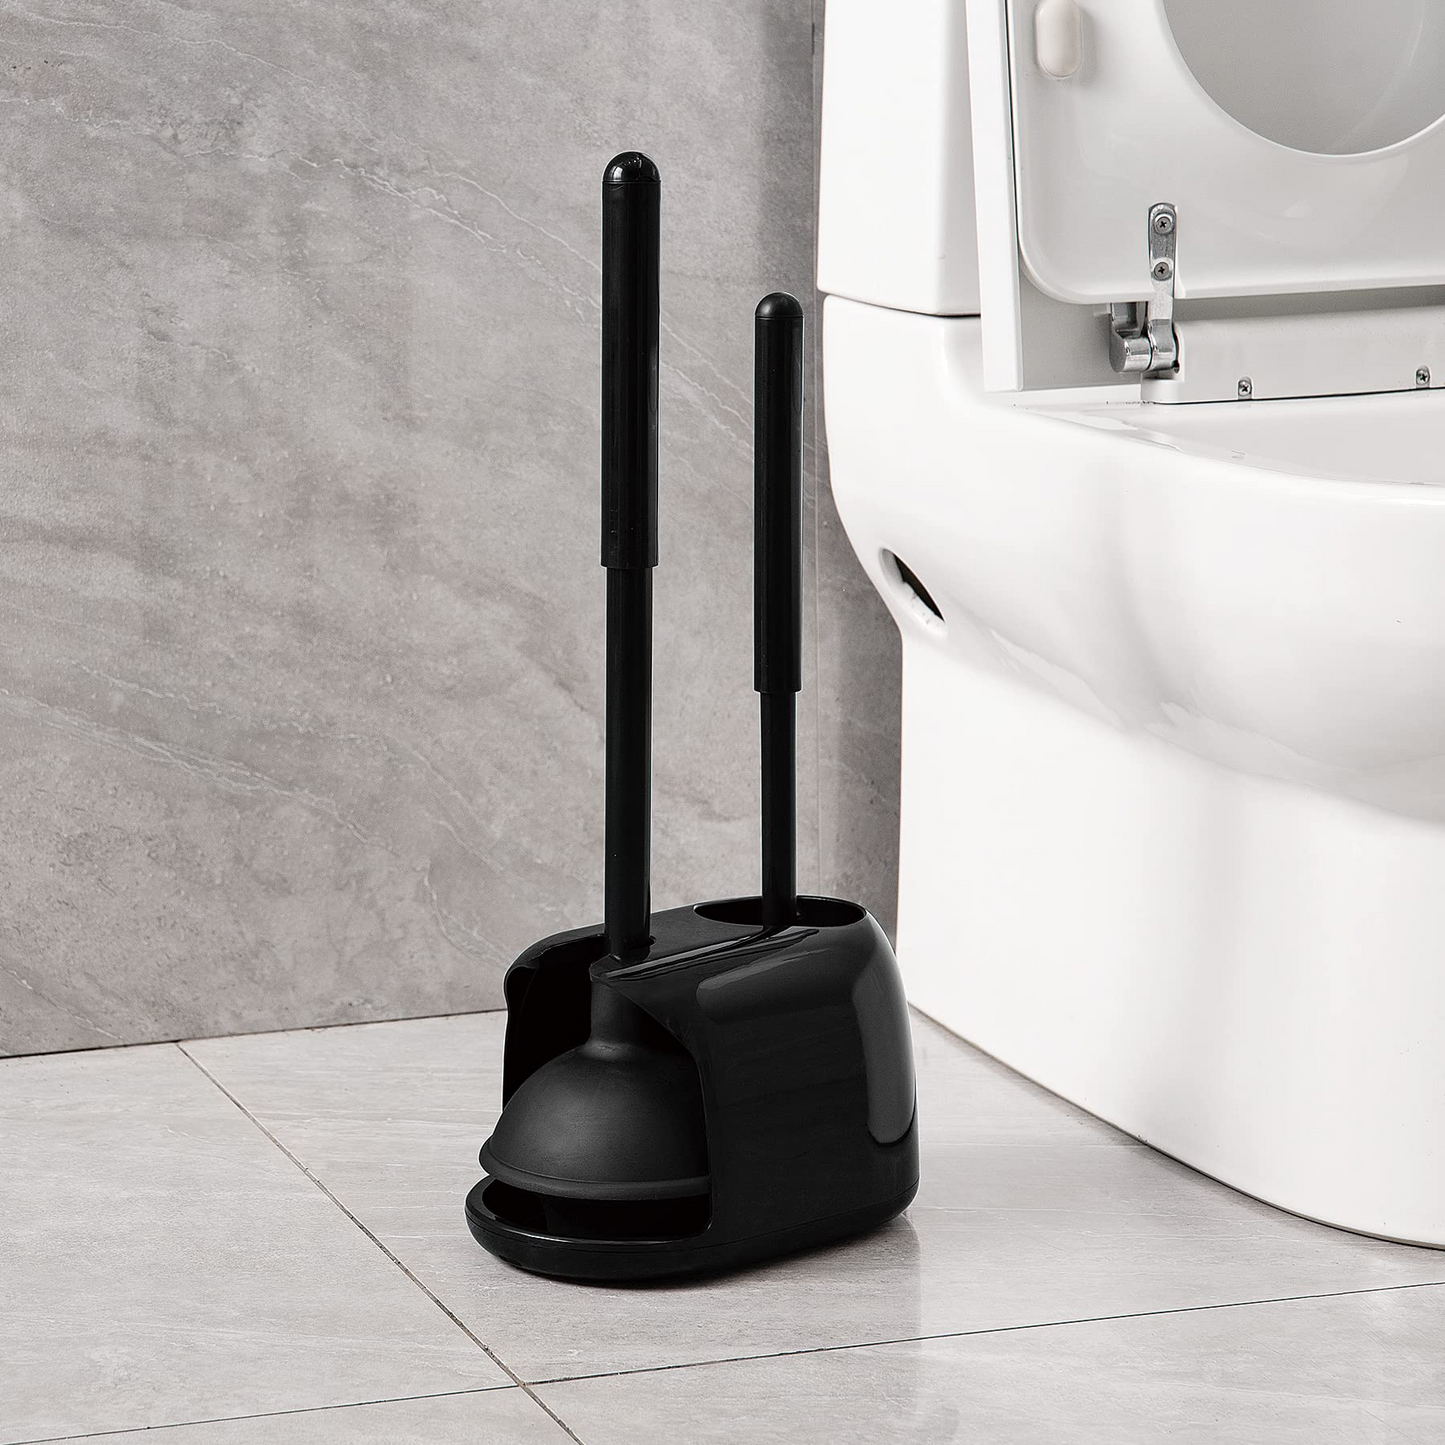 Toilet Bowl Brush with Rim Cleaner and Holder Set Black & White